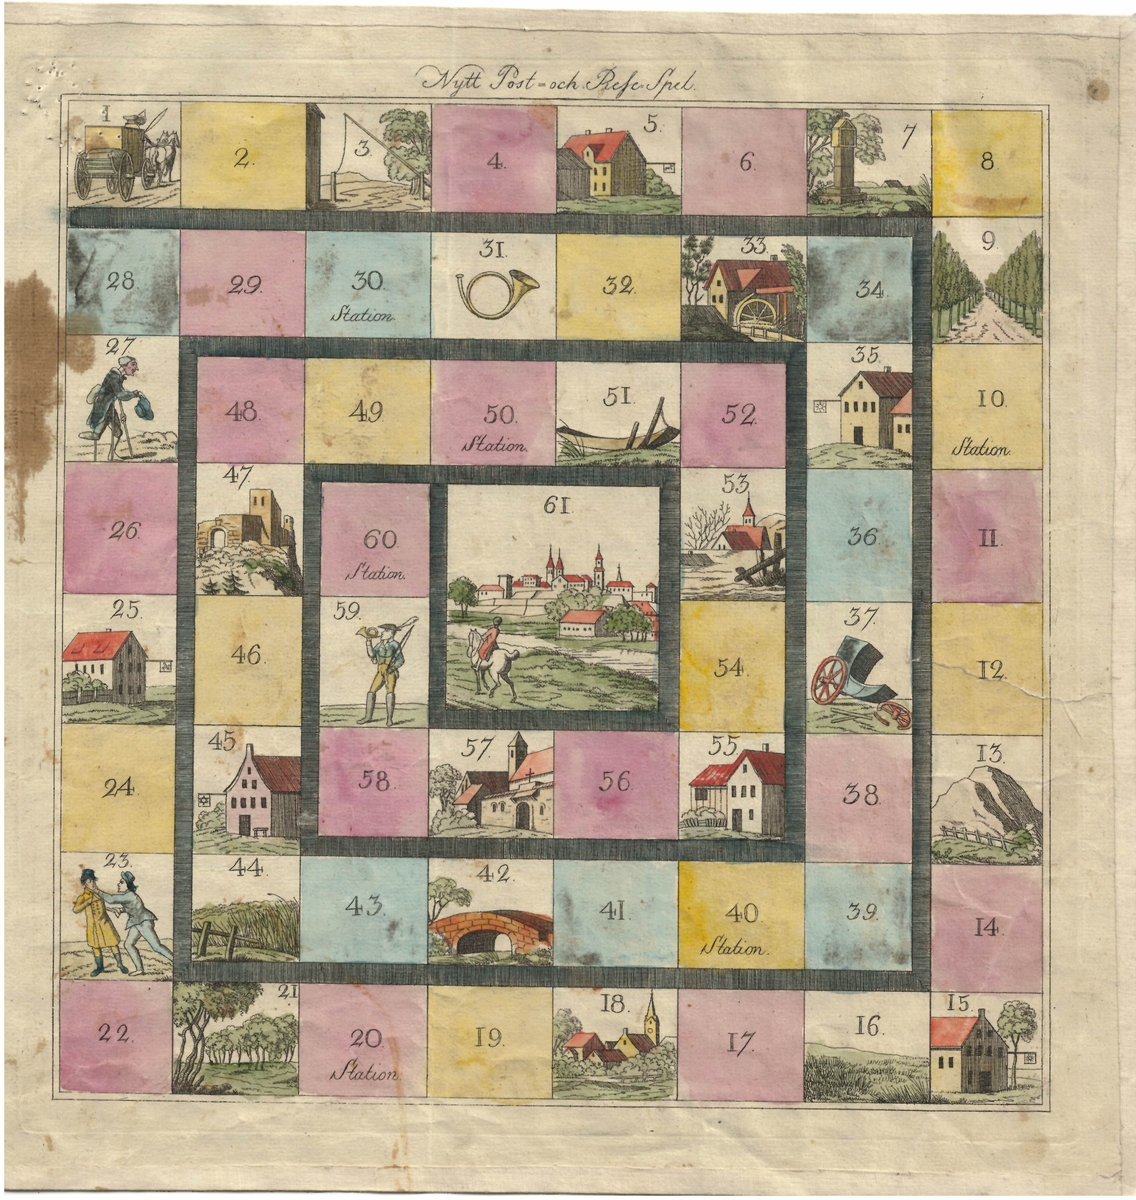 Spelplan, spelregler och pappask med marker av papp till "Nytt Post- och Resespel av 1821".

Två tärningar behövs för att spela, finns ej i lådan.